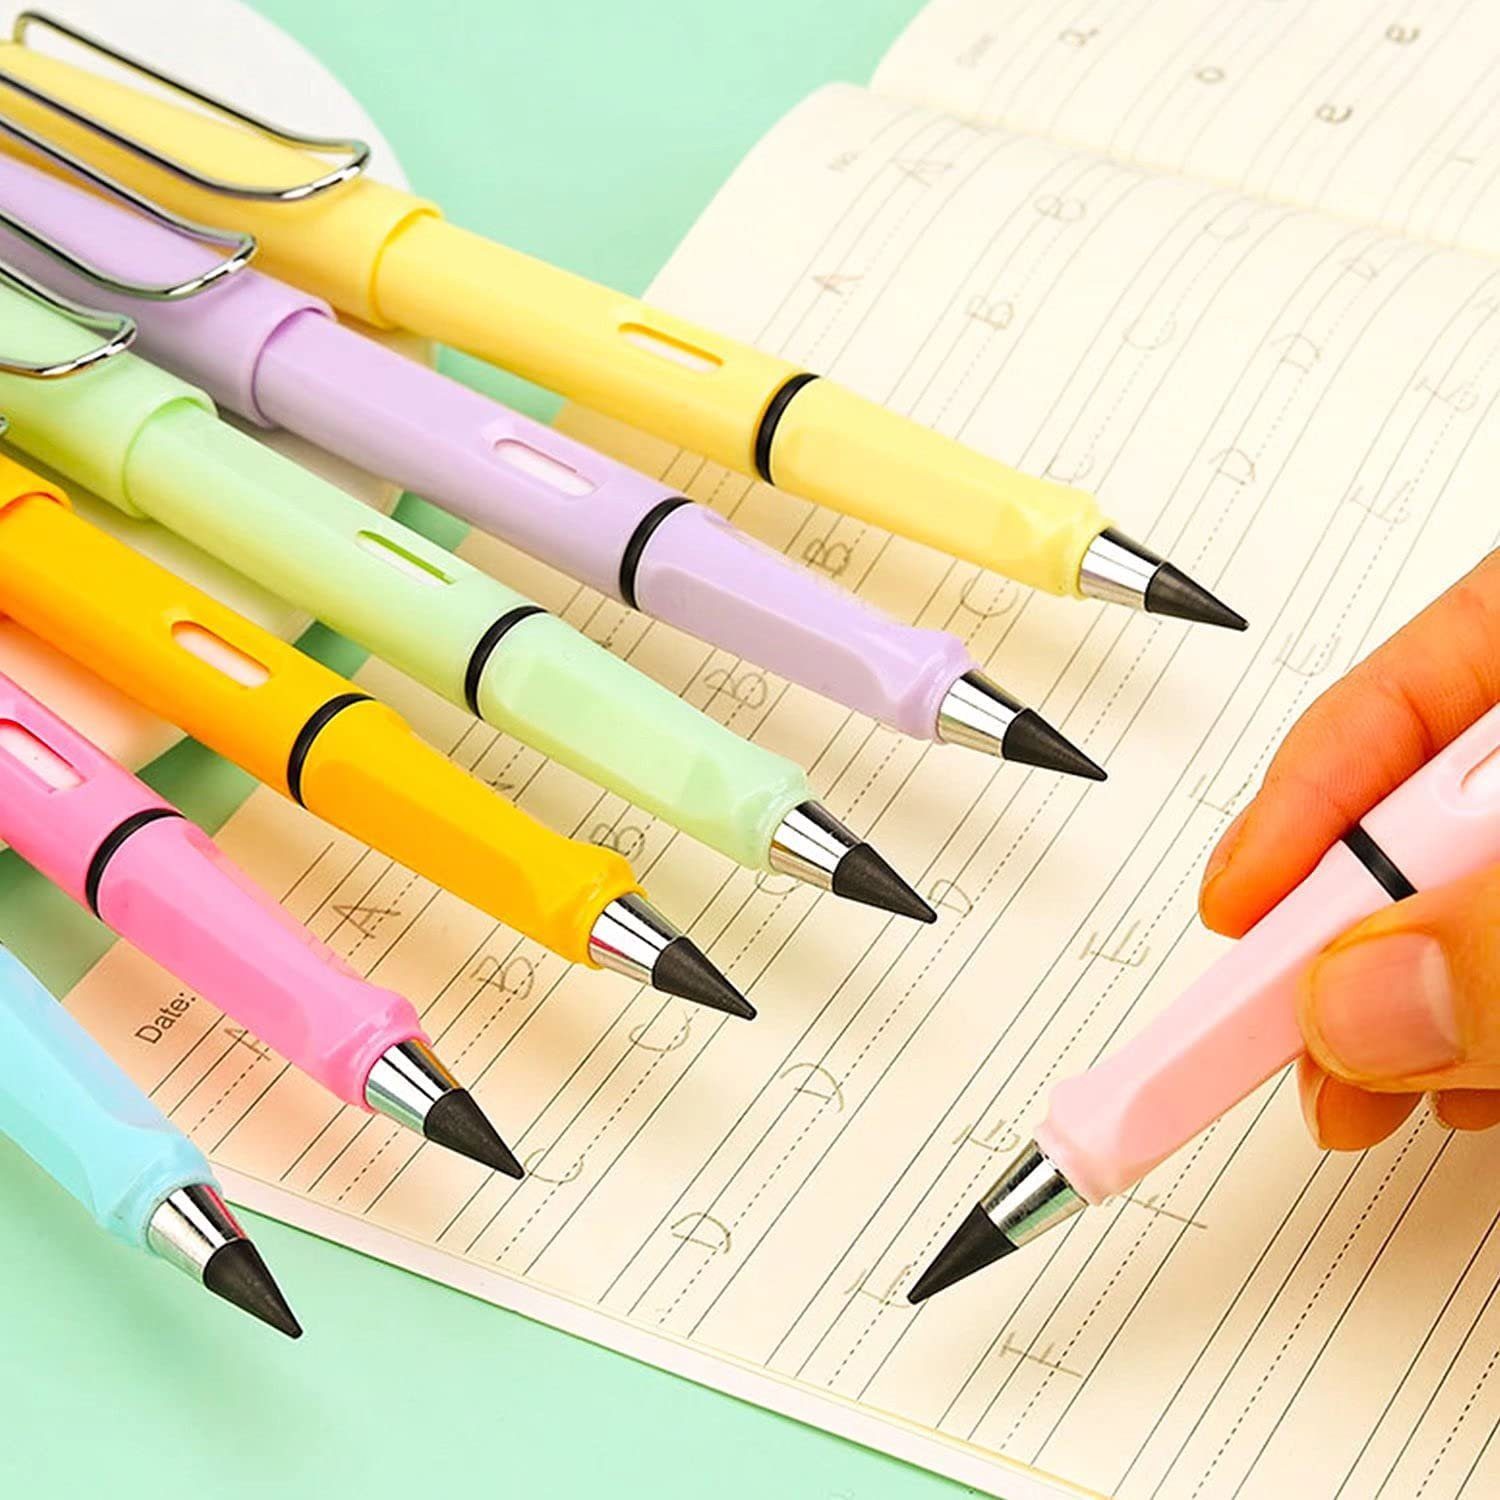 XDeer Bleistift Der Bleistift,Tragbarer gefragte für auf am Tinte Farbe zum die C Legierungsmetallmoleküle Papieroberfläche Papier bleiben Immerwährender Bleistift,Ewiger Spitze schreiben. Schüler/Künstler ohne Tintenschreiber sich Aus Bleistift Bleistifte,Unendlicher Zeichnen neue Anspitzen reibt,die Schreiben, der und oder Bleistift,Tintenlose kann zersetzen Dieser wenn (6-tlg), Bleistift,Wiederverwendbar bleistift Metall,wunderbarer